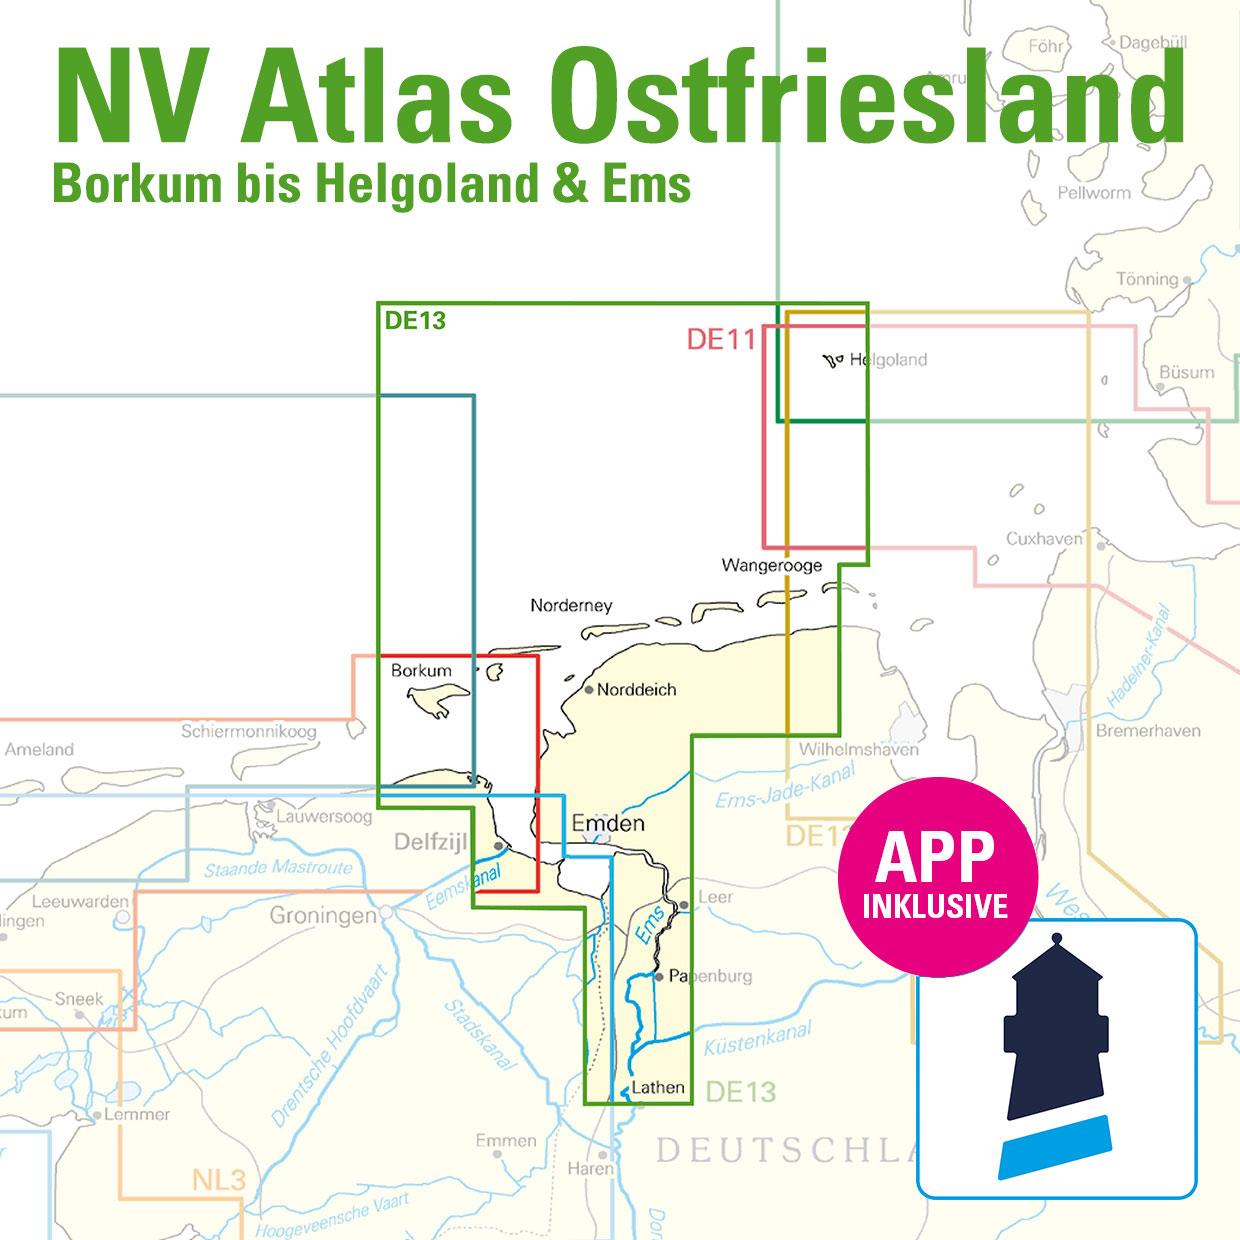 ABO - NV Charts Nordsee DE13 - Borkum bis Helgoland & Ems